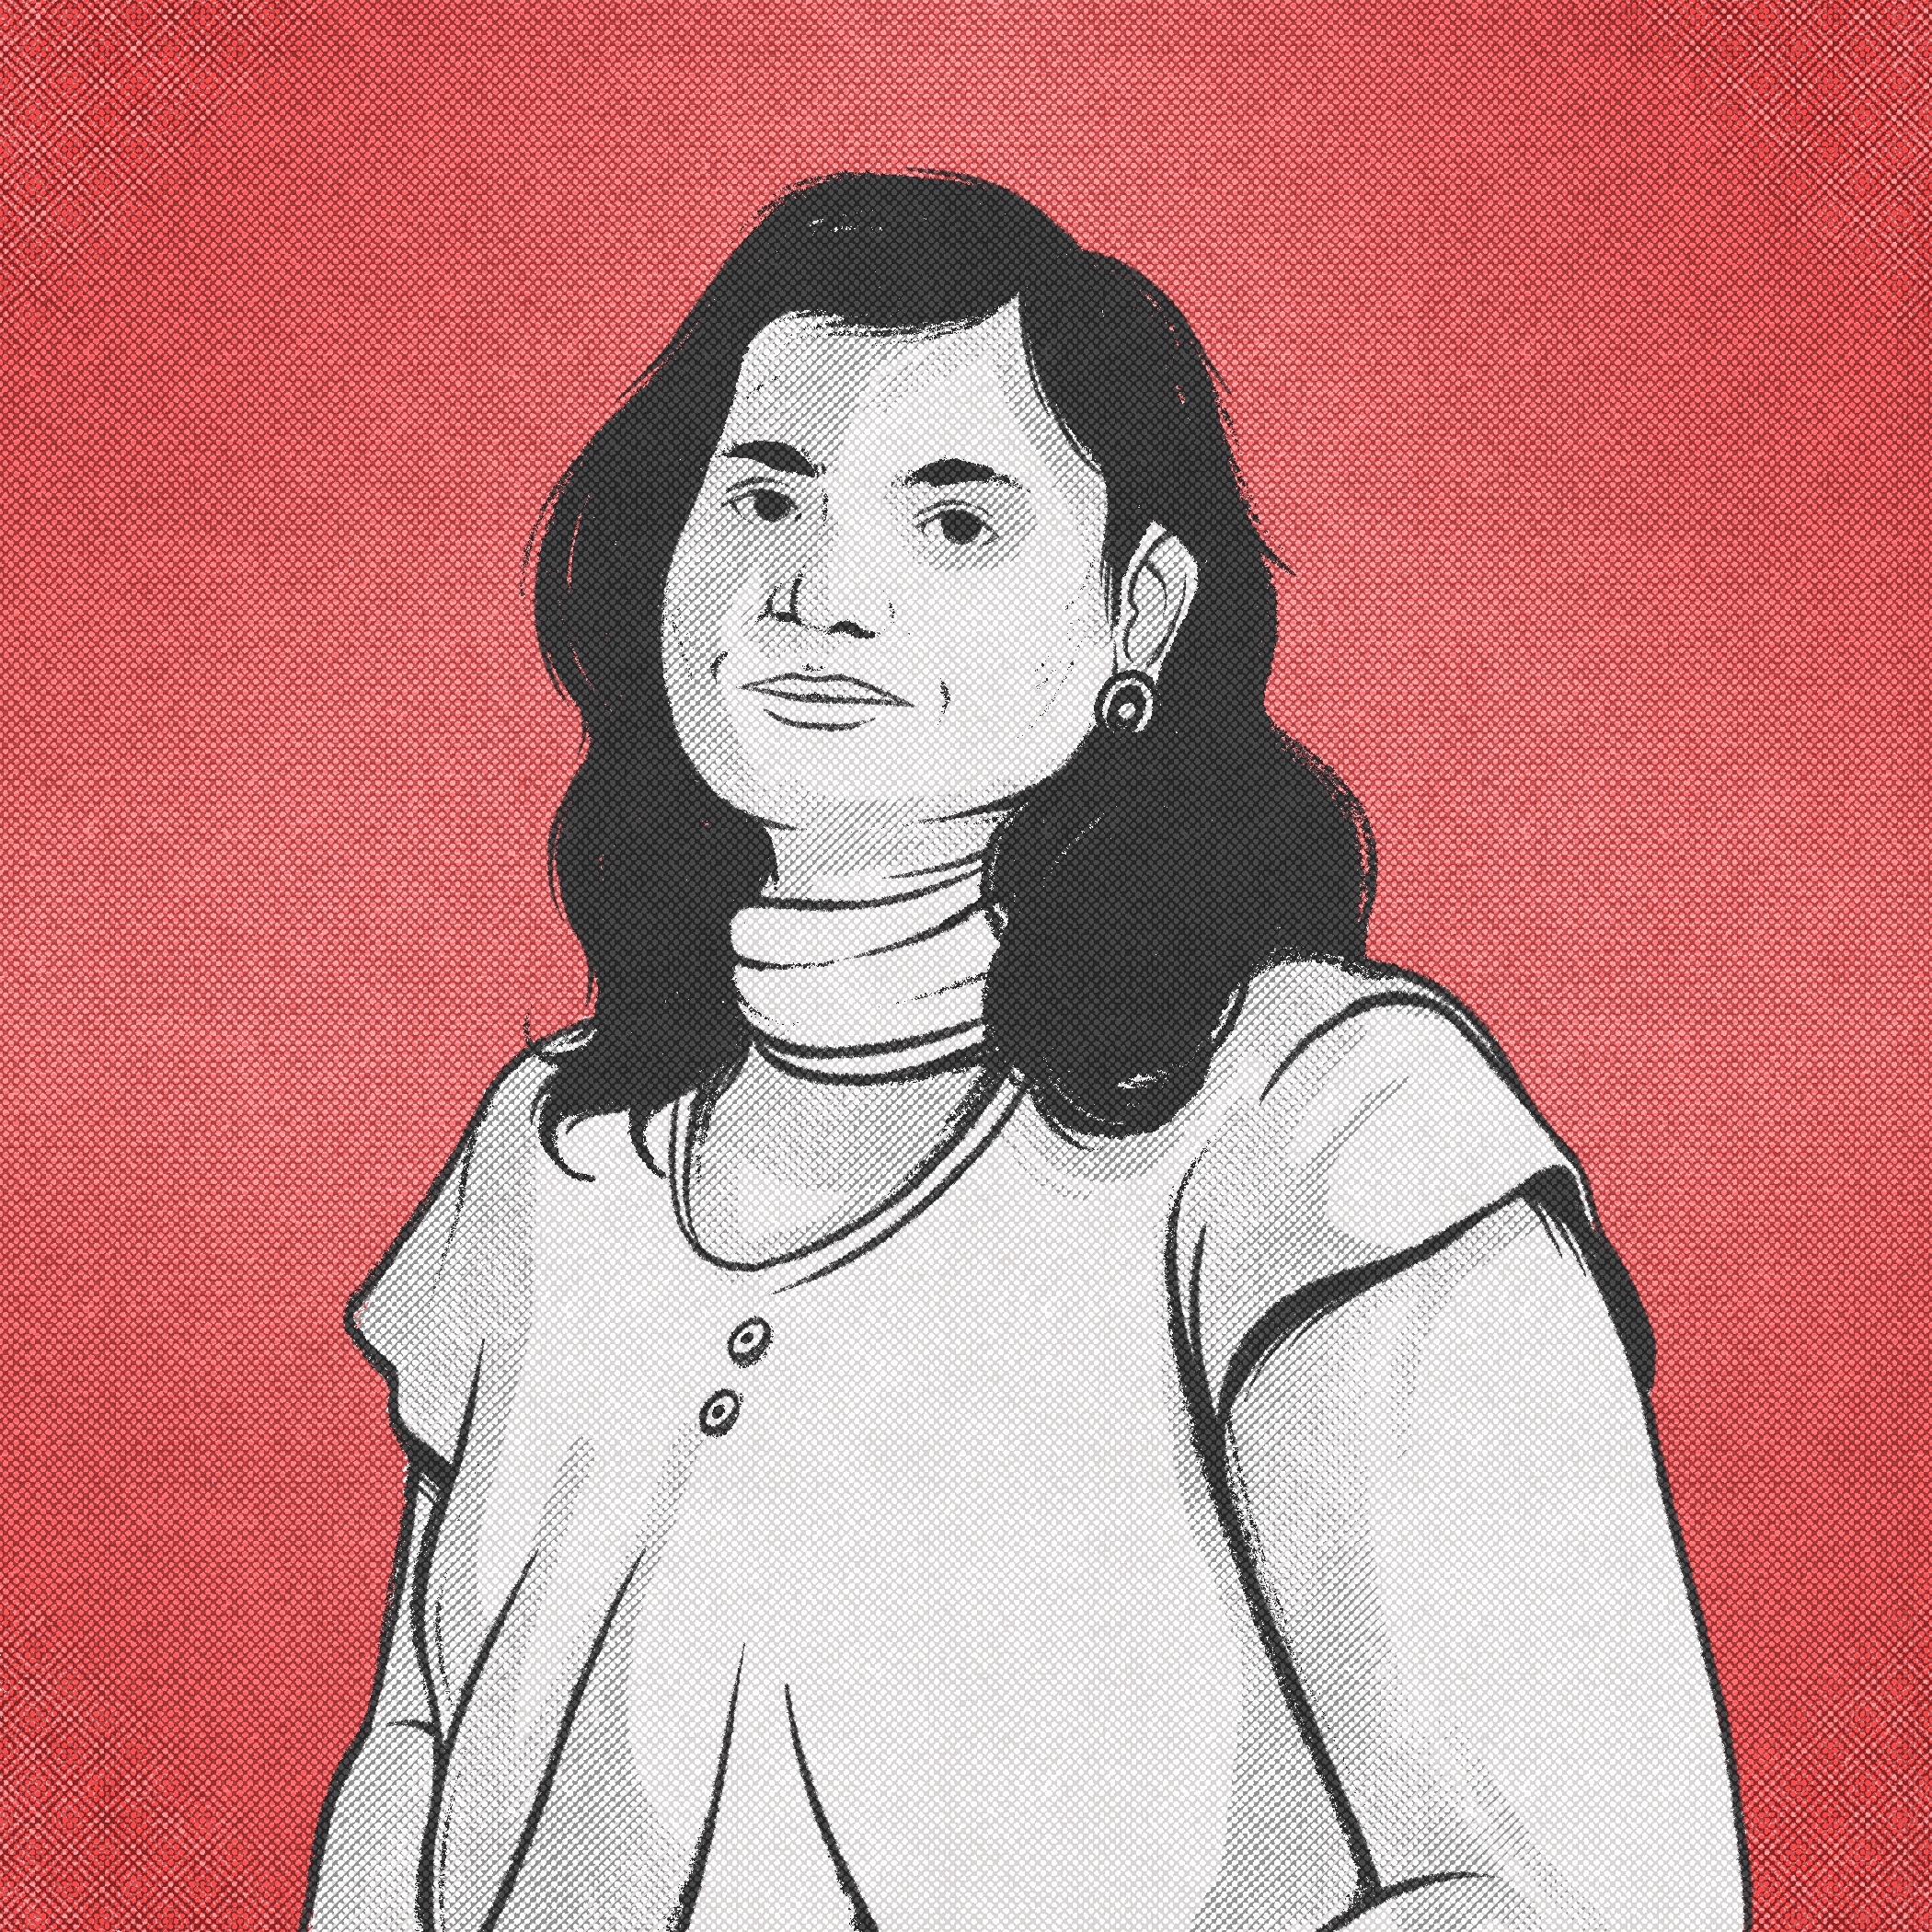 रूपेश के खिलाफ मामले में मुझे फंसाने की कोशिश : जेल में बंद पत्रकार की पत्नी, इप्सा शताक्षी